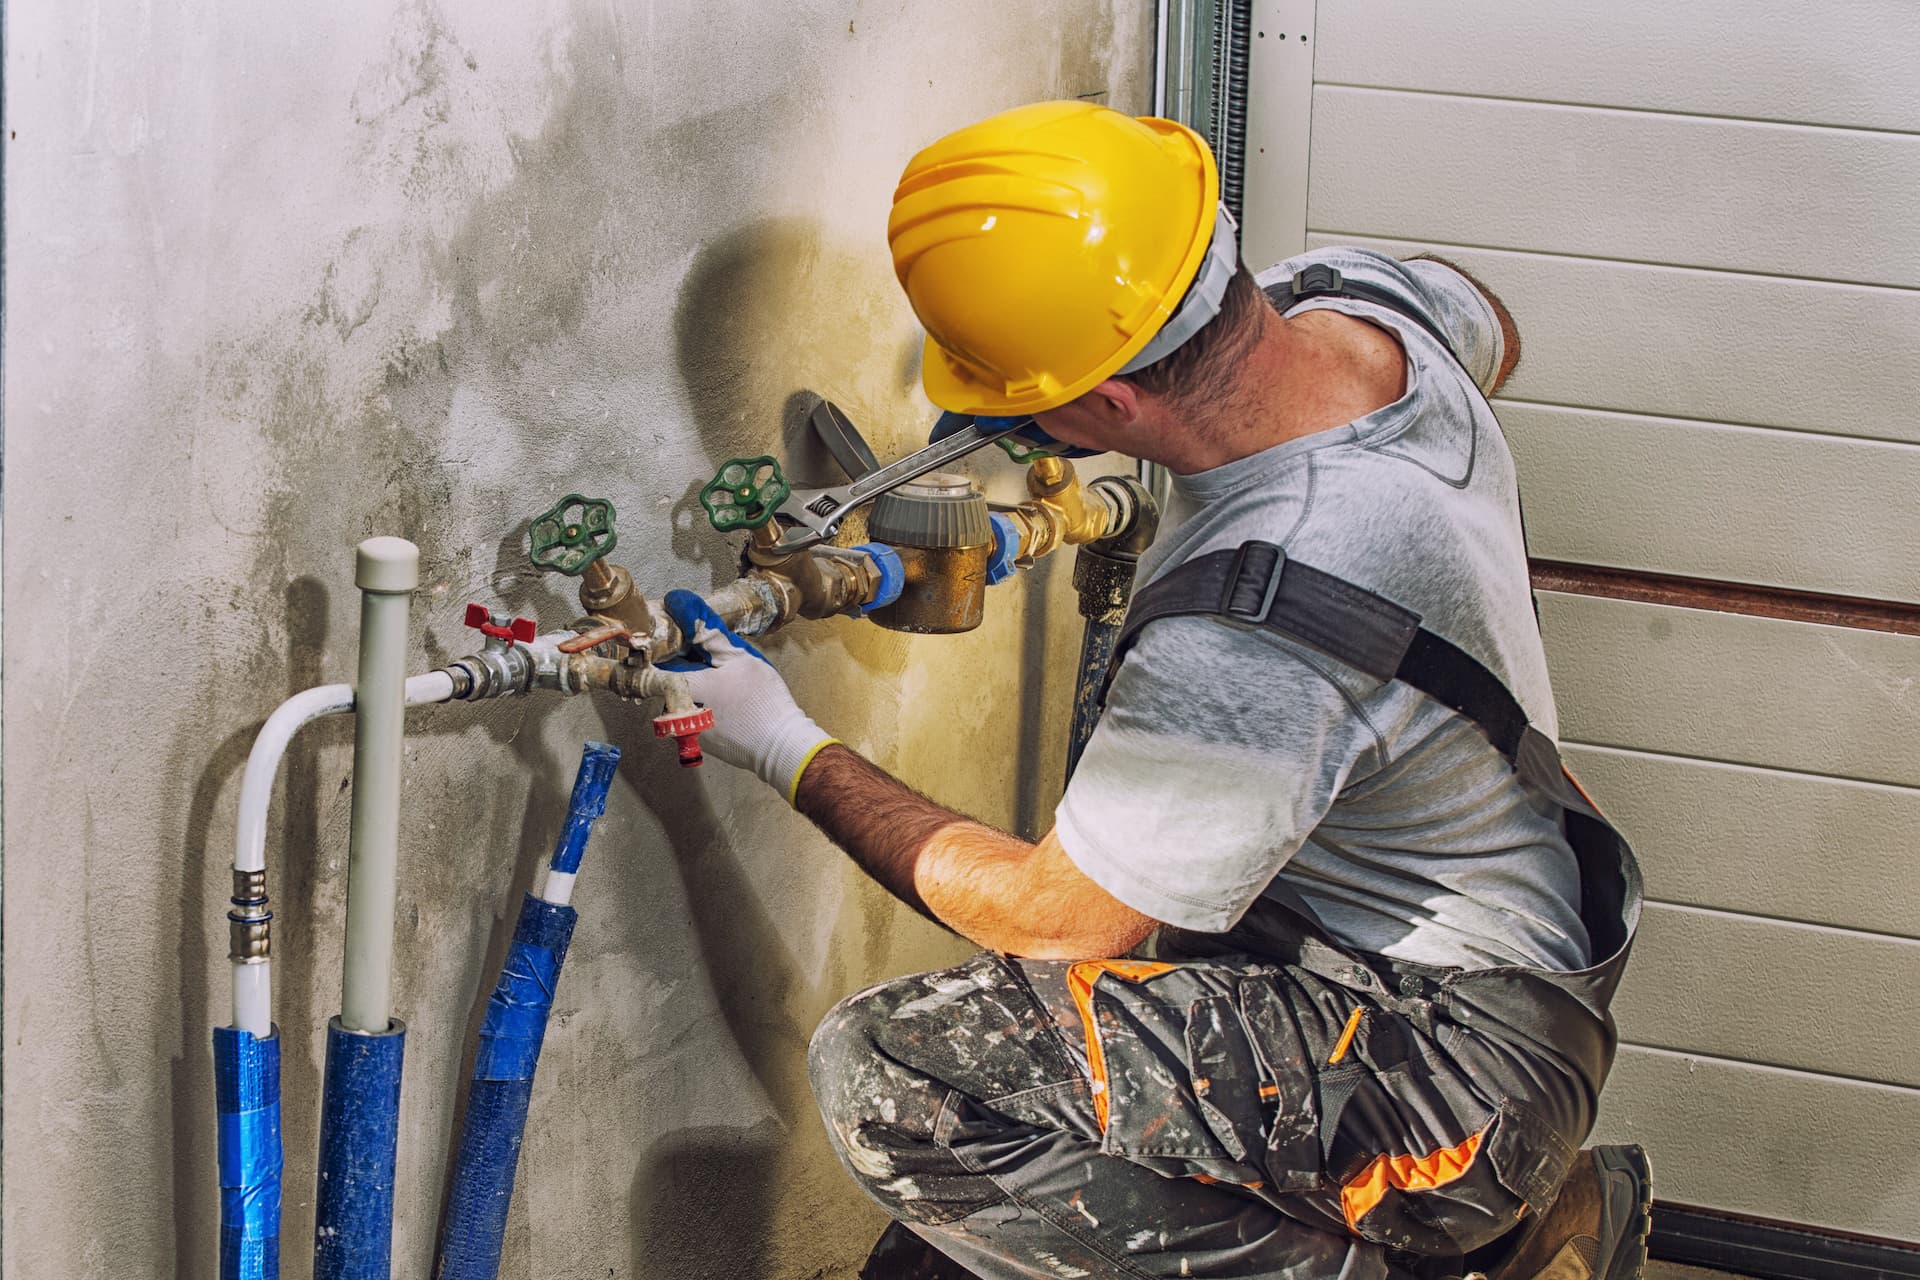 Plumbing subcontractor adjusting water valve